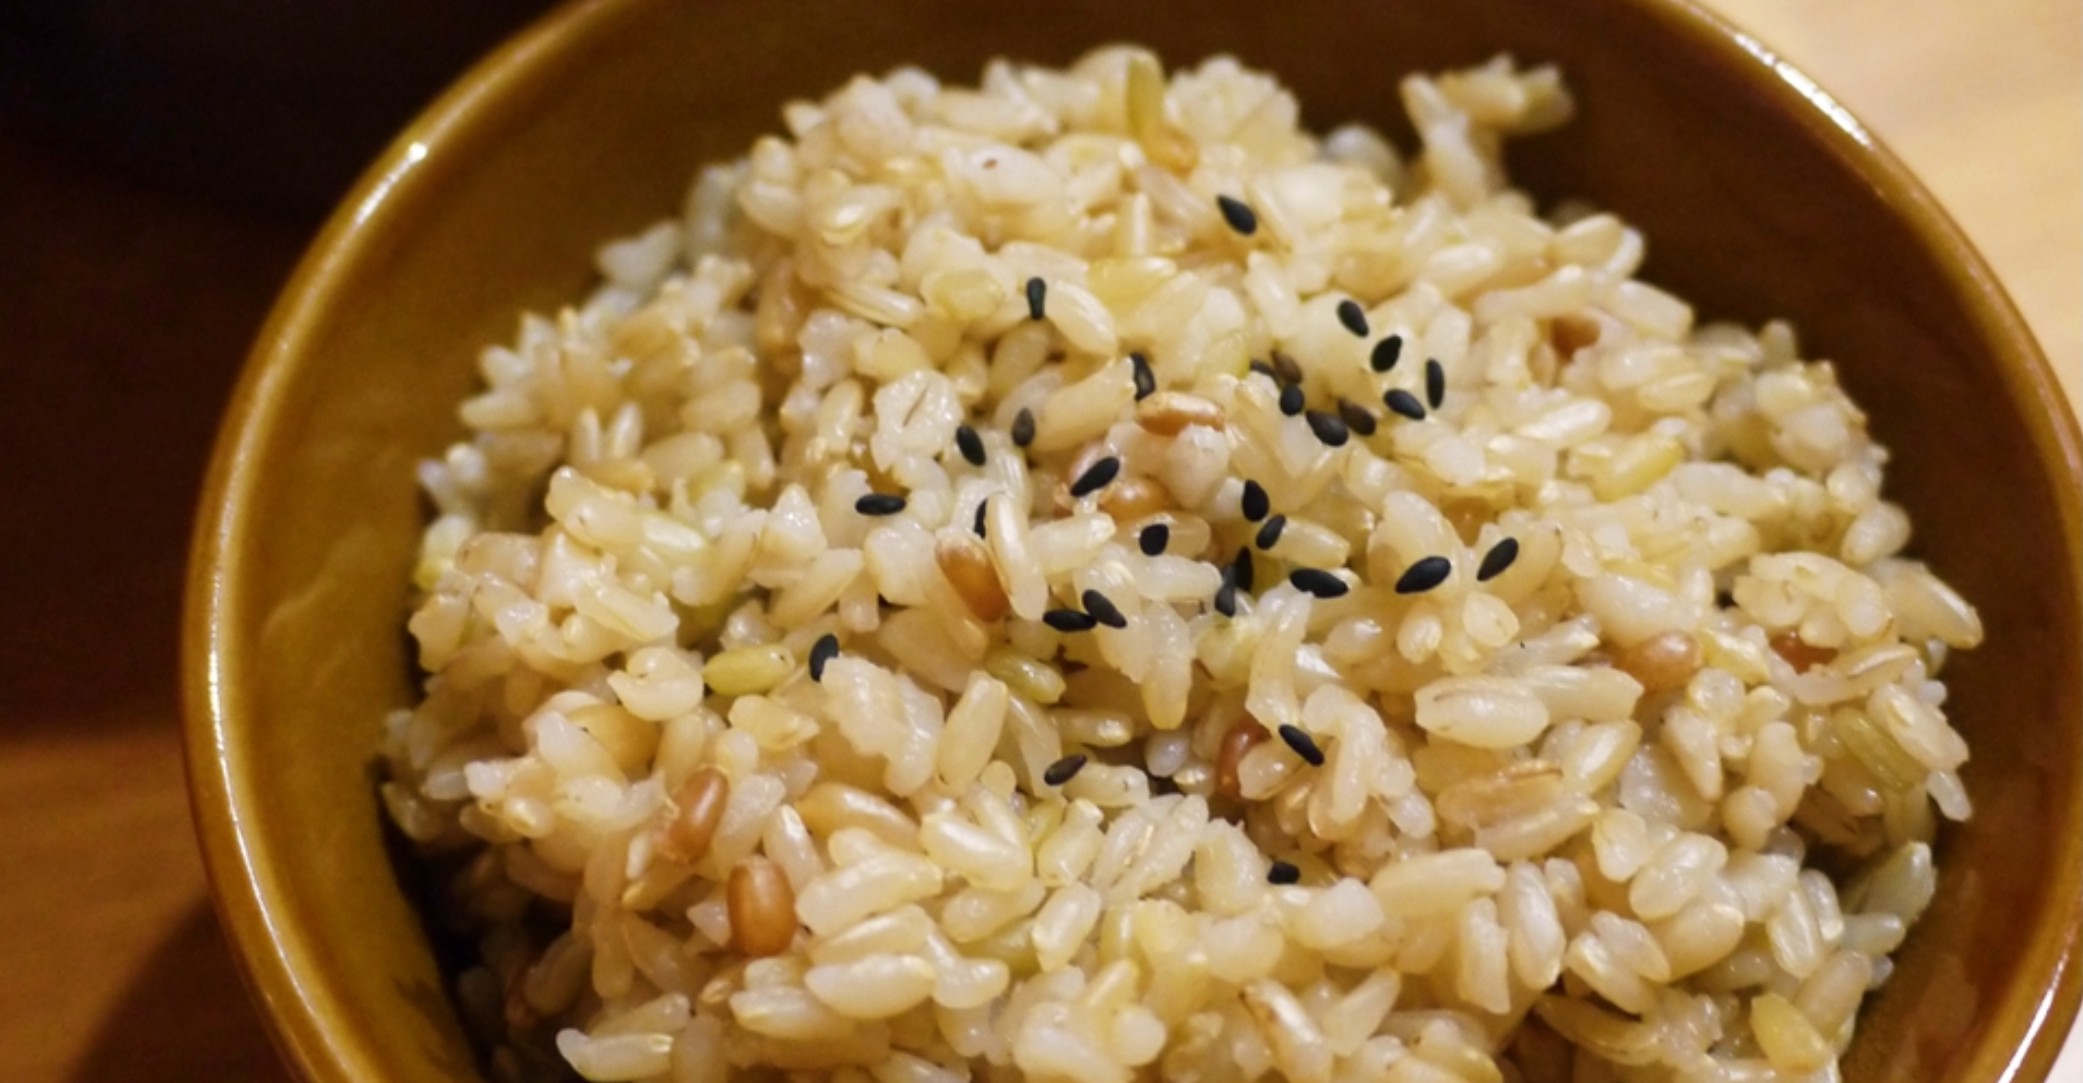 用偷吃步煮糙米饭:懒人图解笔记